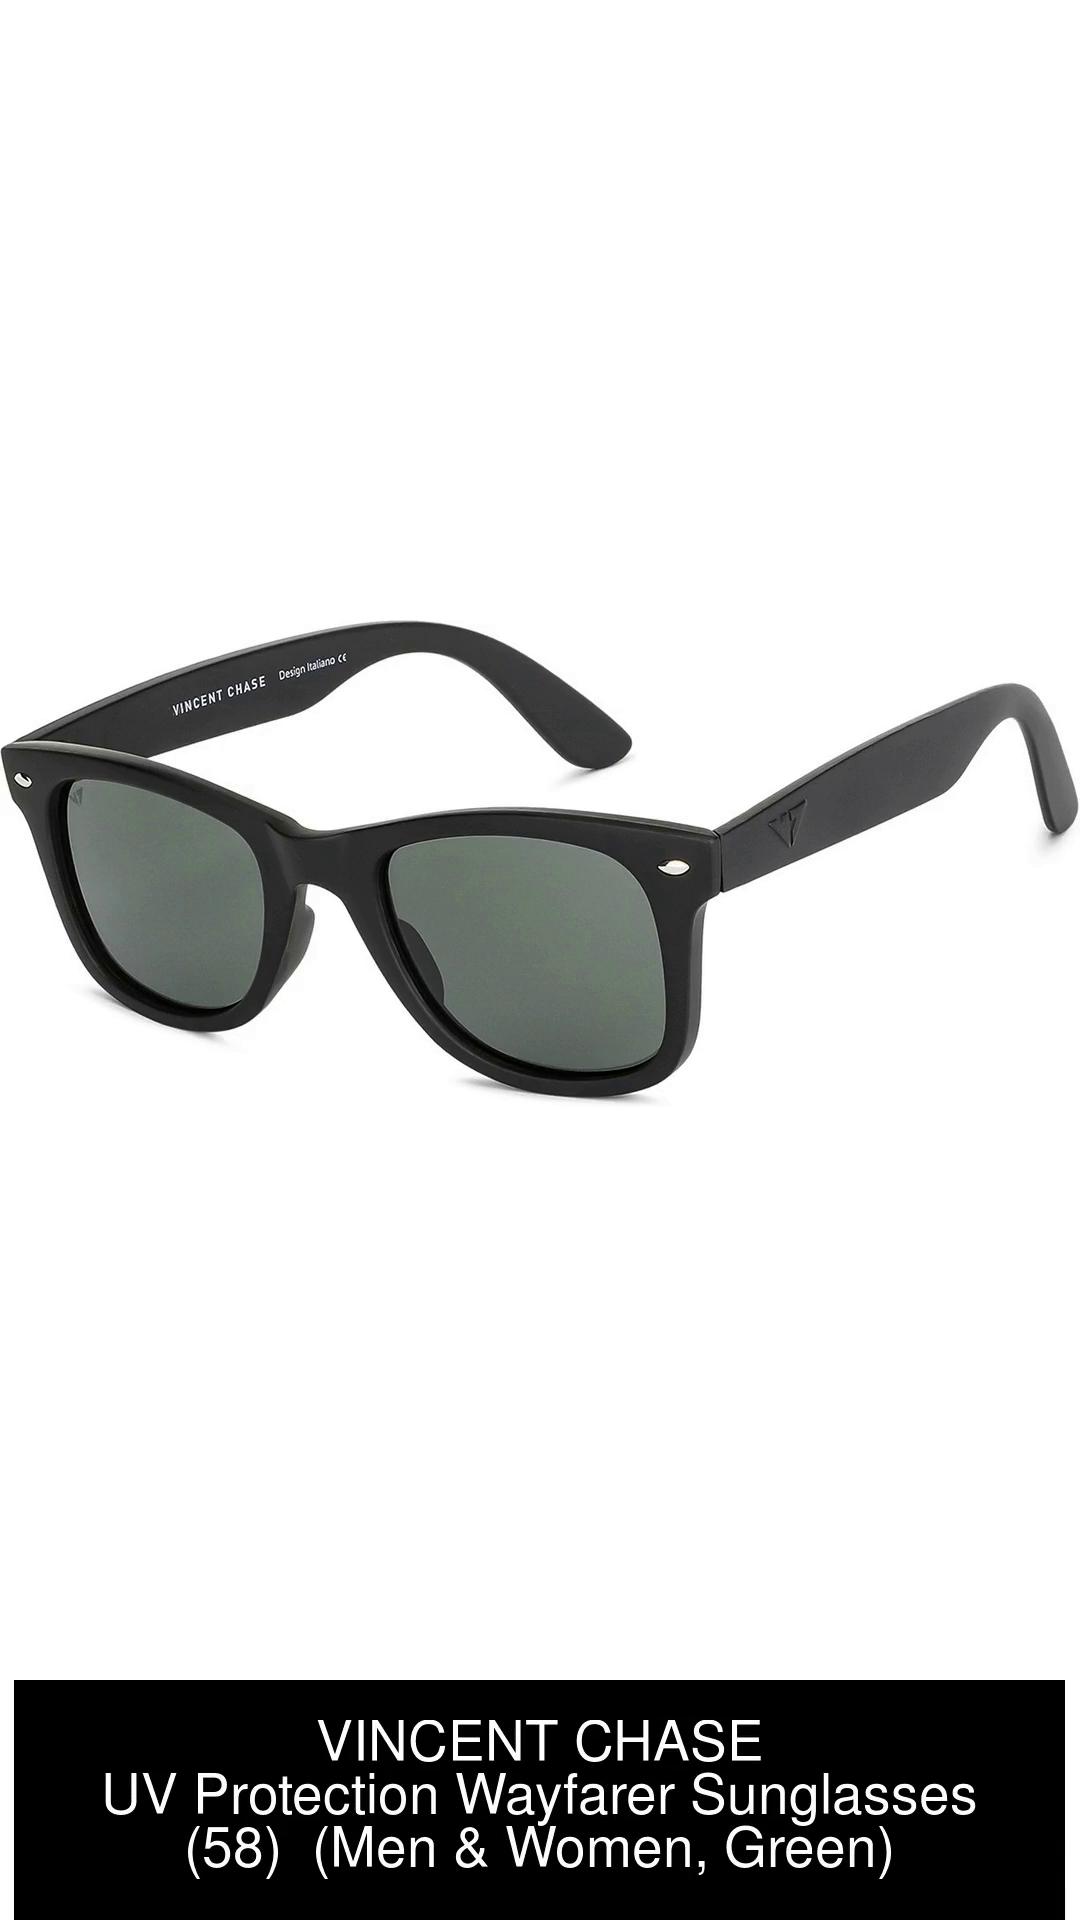 Black Sunglasses For Men & Women Online Lenskart